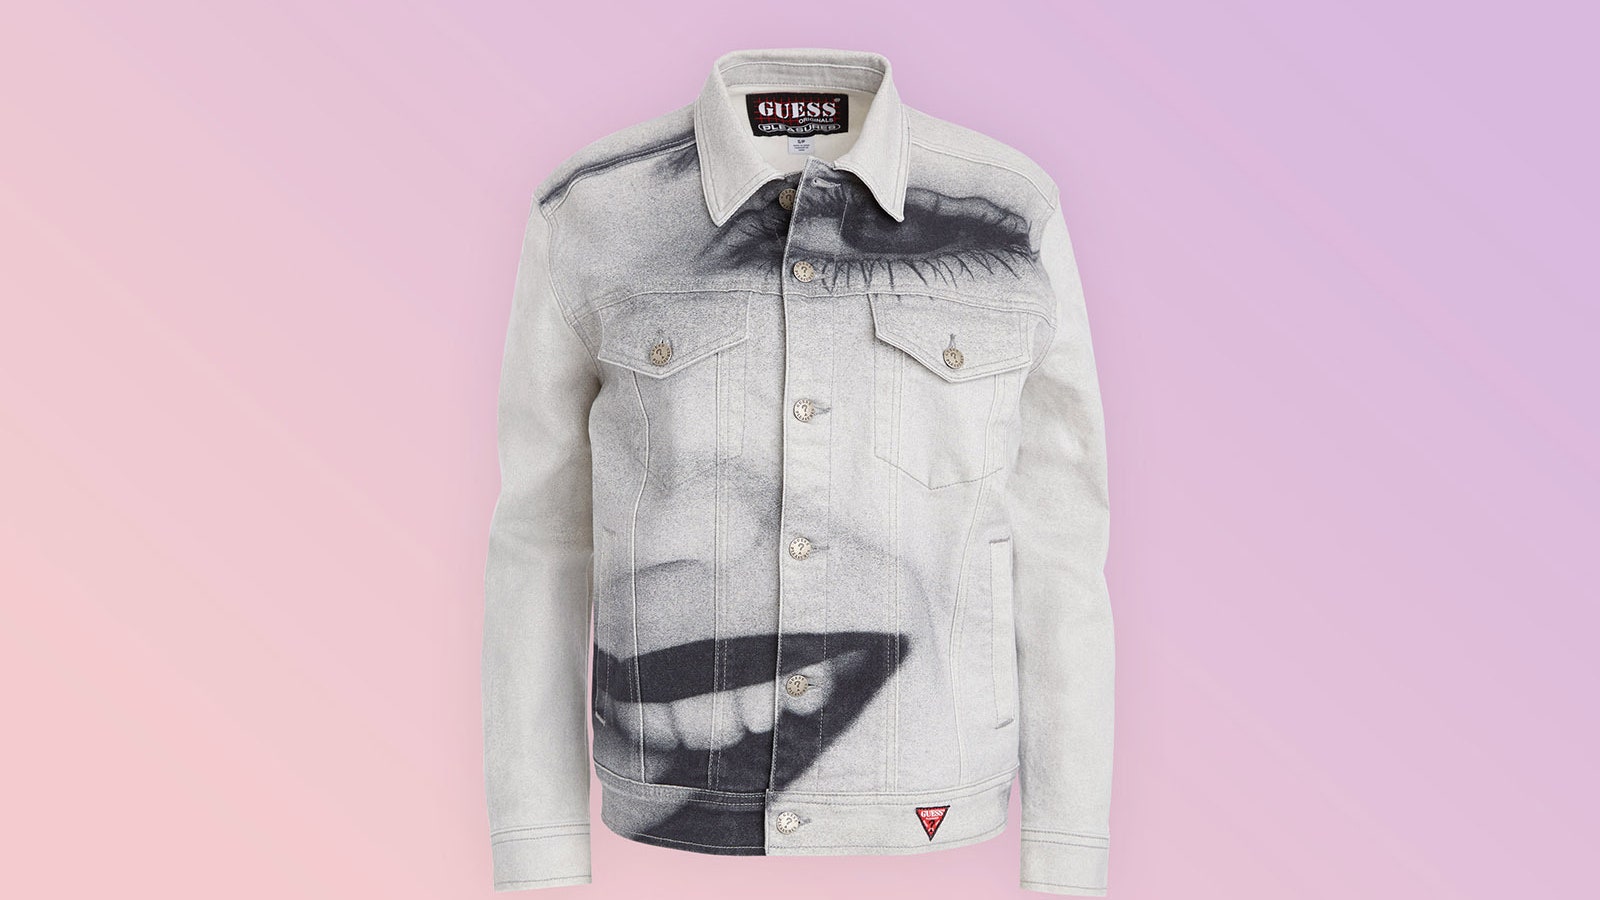 Джинсовая куртка с изображением Дрю Бэрримор из коллекции Guess Originals x Pleasures